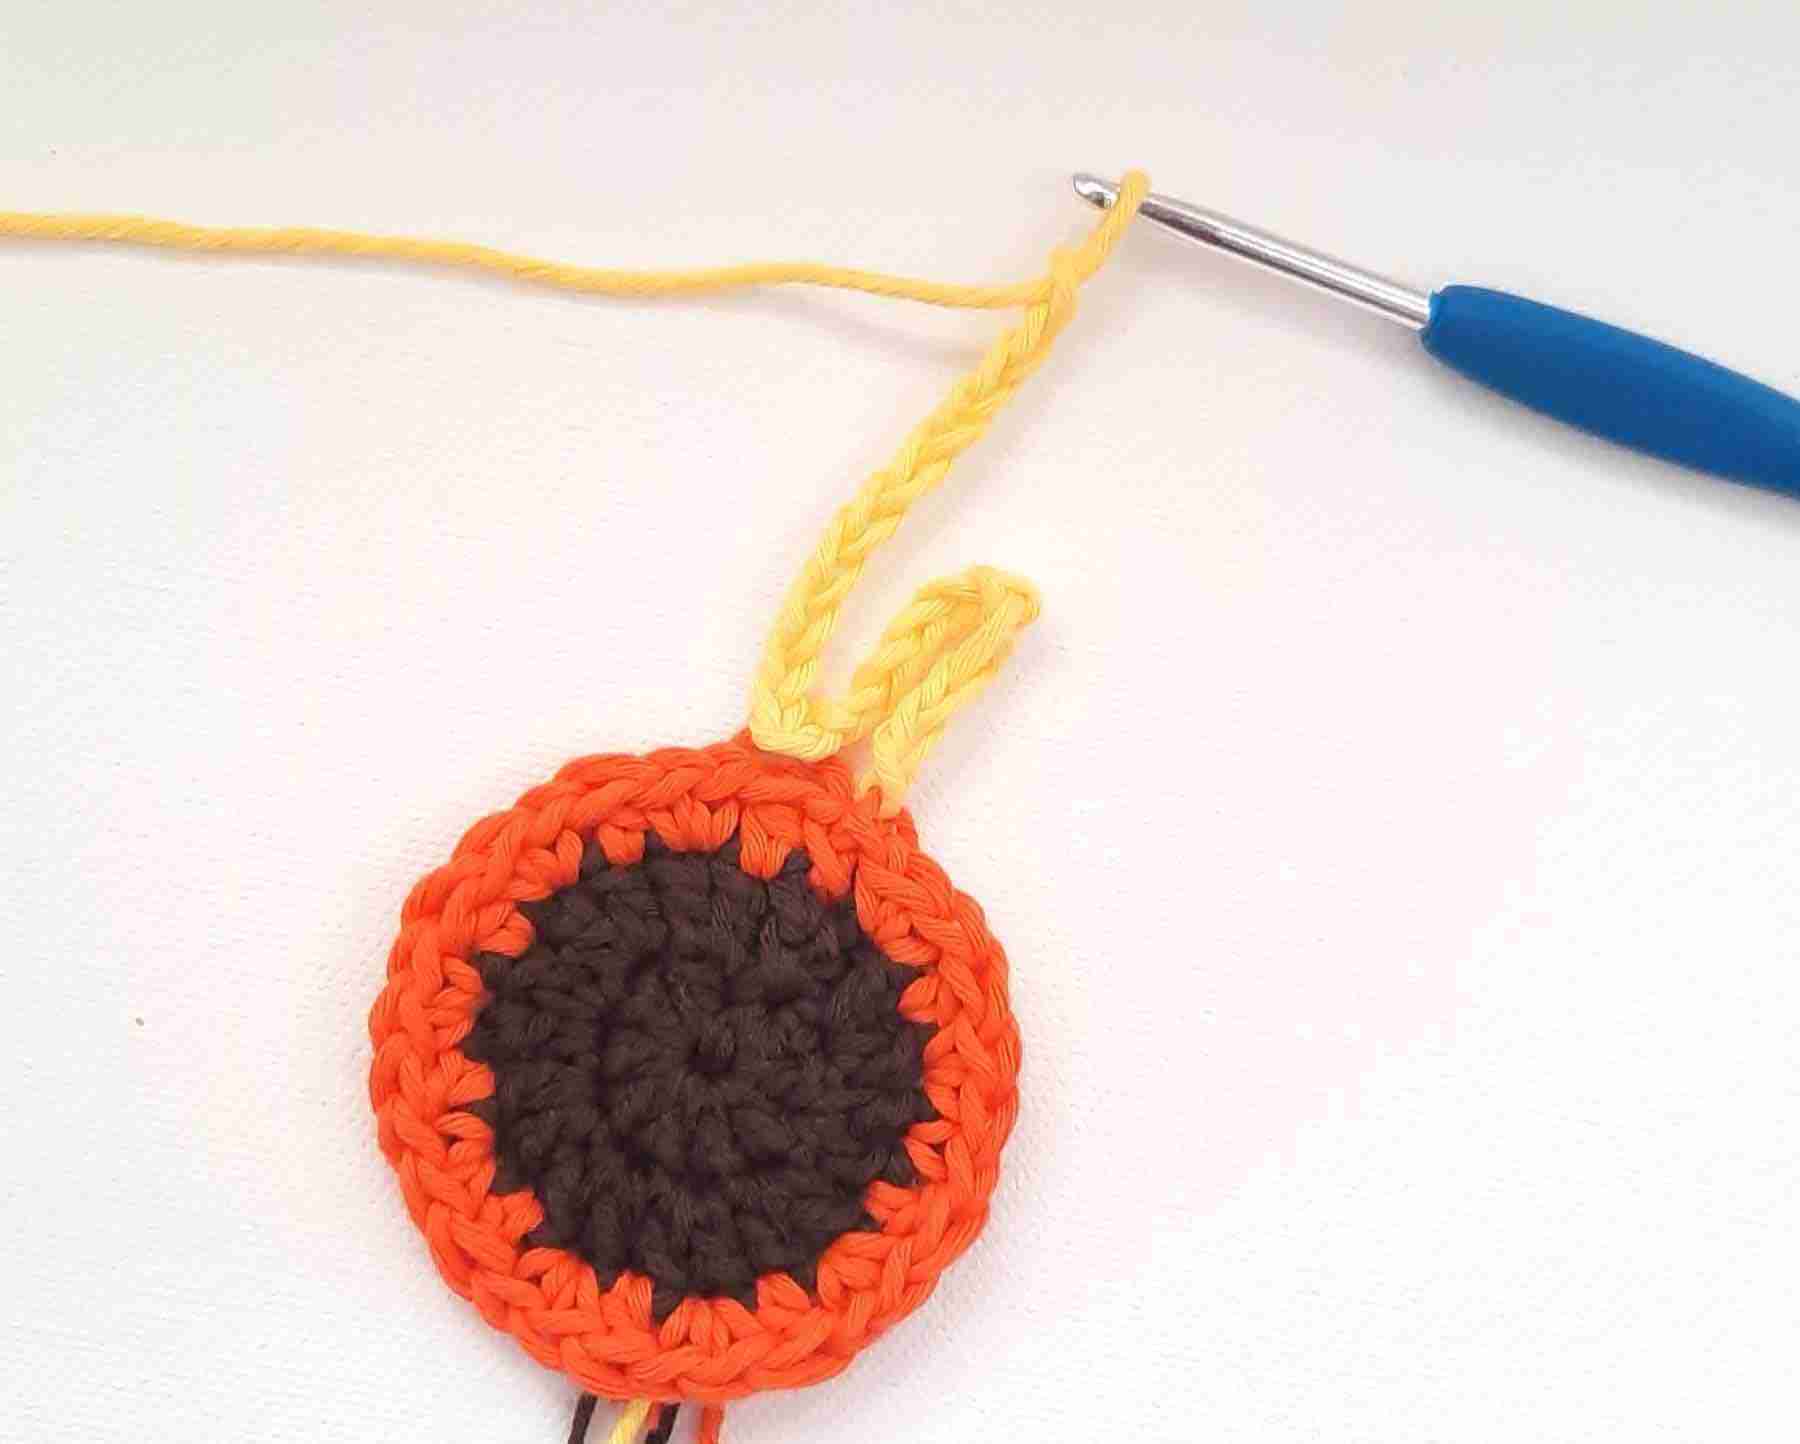 Sunflower crochet pattern Free - how to crochet petals